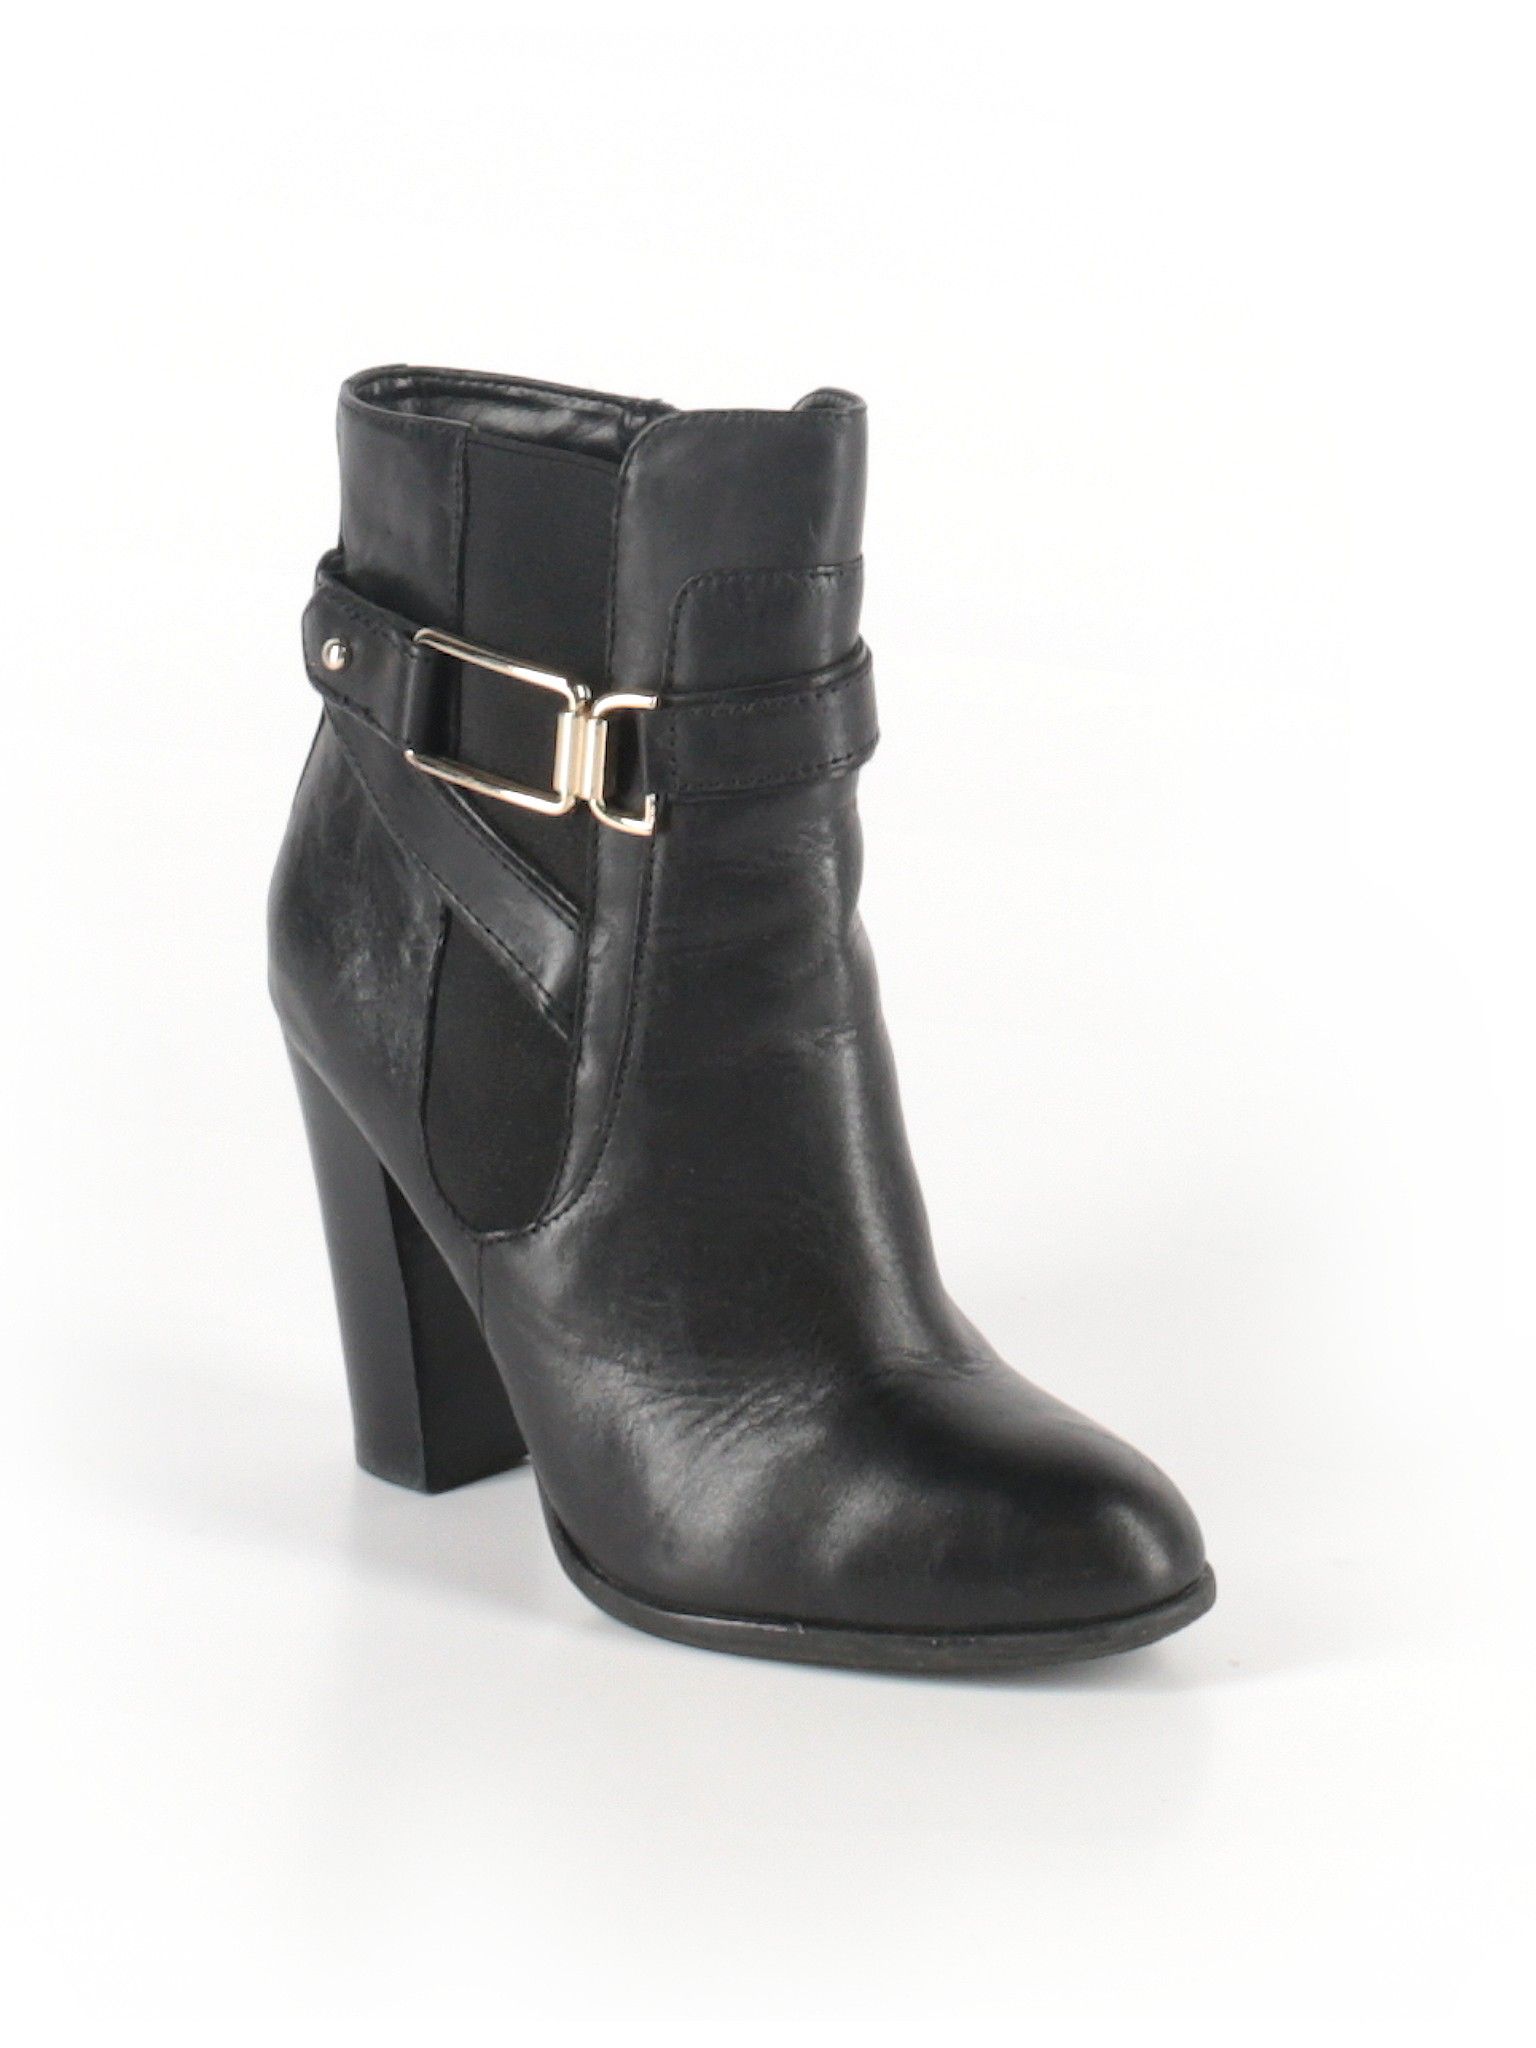 Aldo Ankle Boots Size 6 1/2: Black Women's Shoes - 42213220 | thredUP